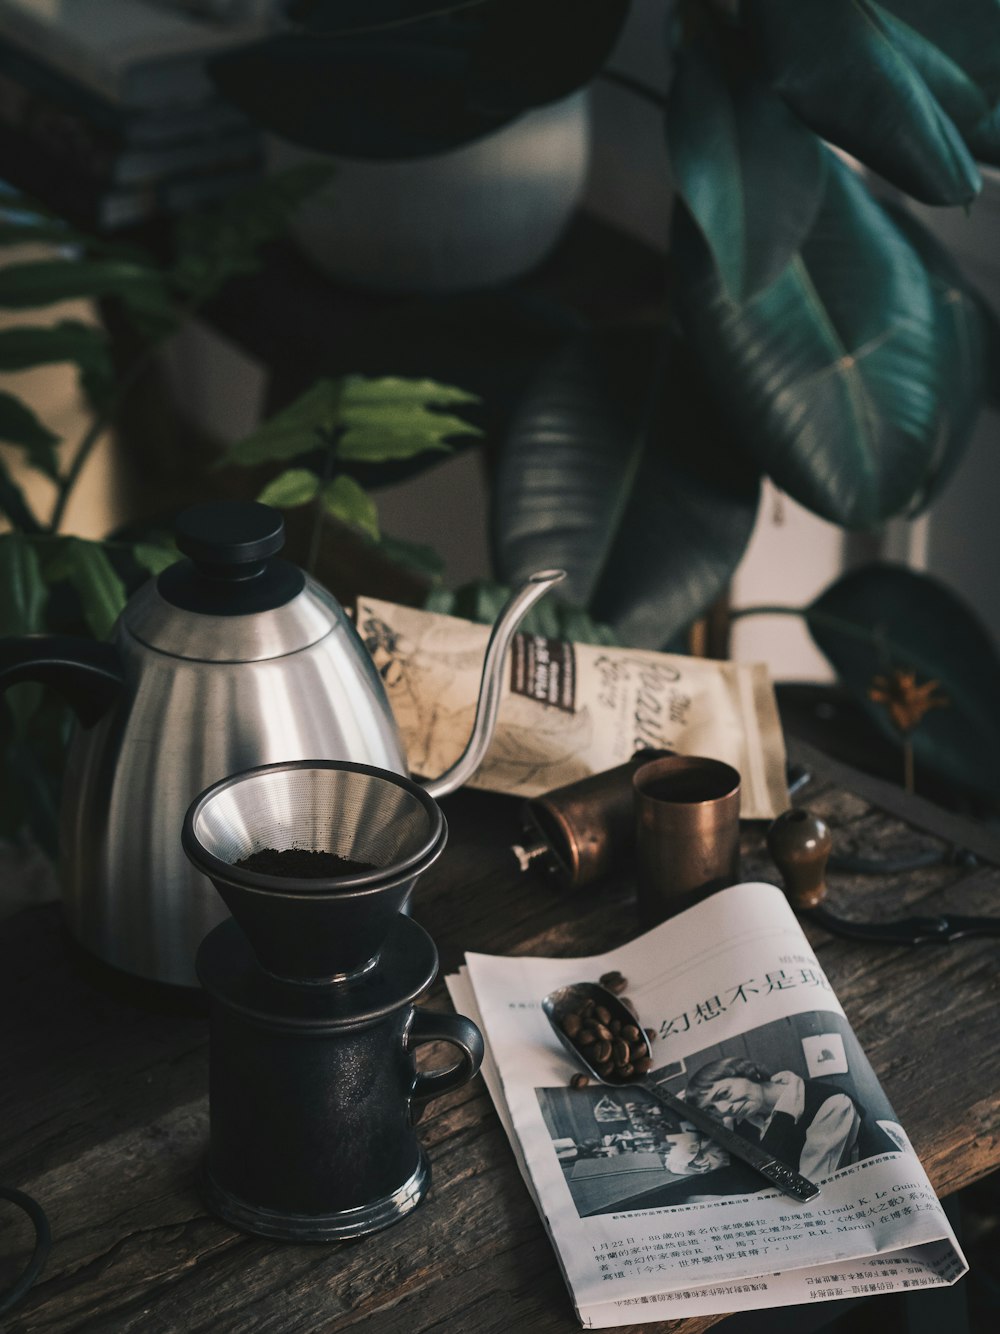 Molinillo de café negro al lado de una tetera de acero inoxidable gris cerca de una planta de caucho verde